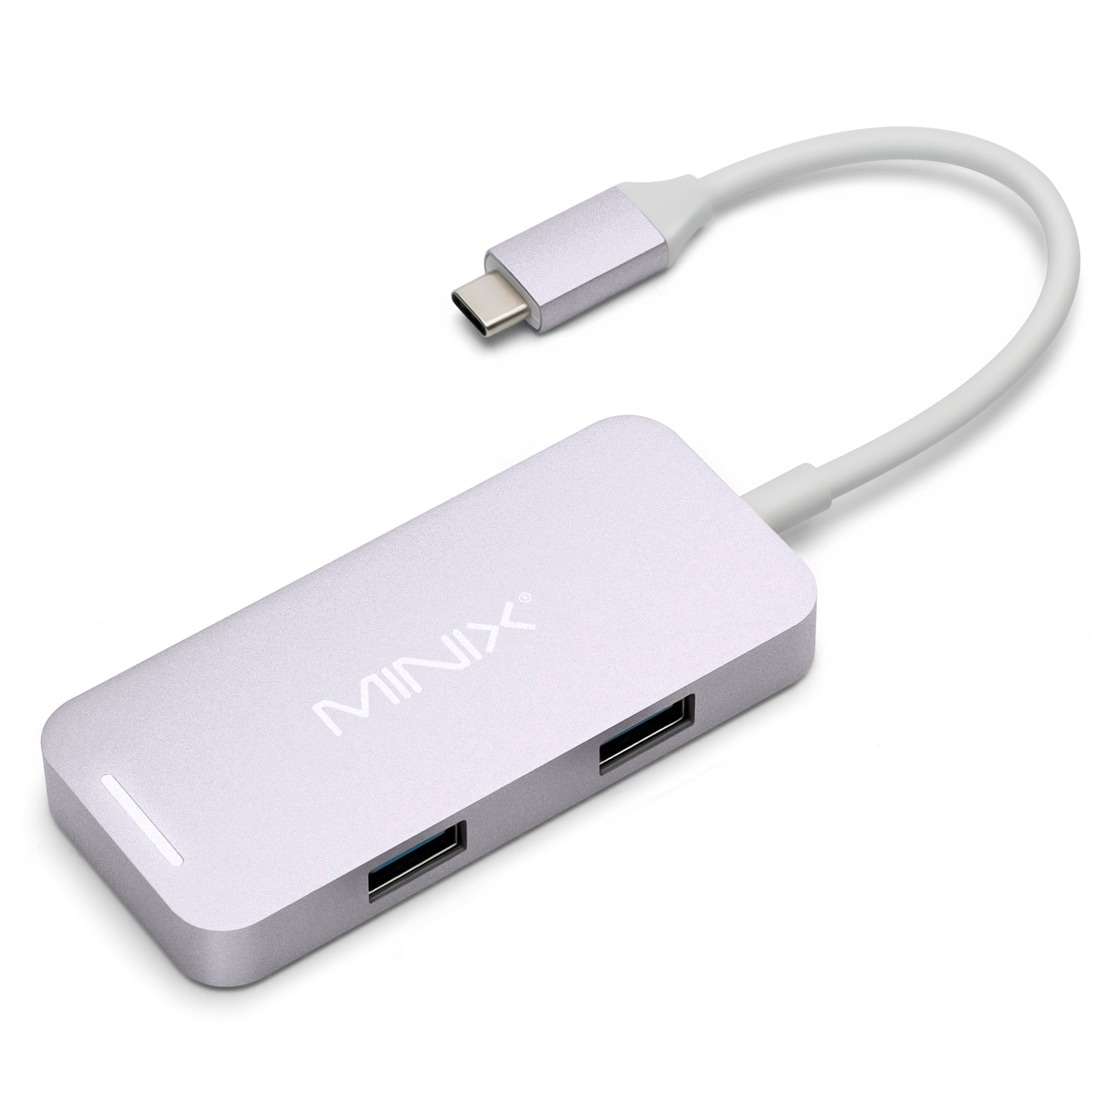 MINIX NEO C Mini 4i1 - USB Typ C Adapter med  HDMI-utgång